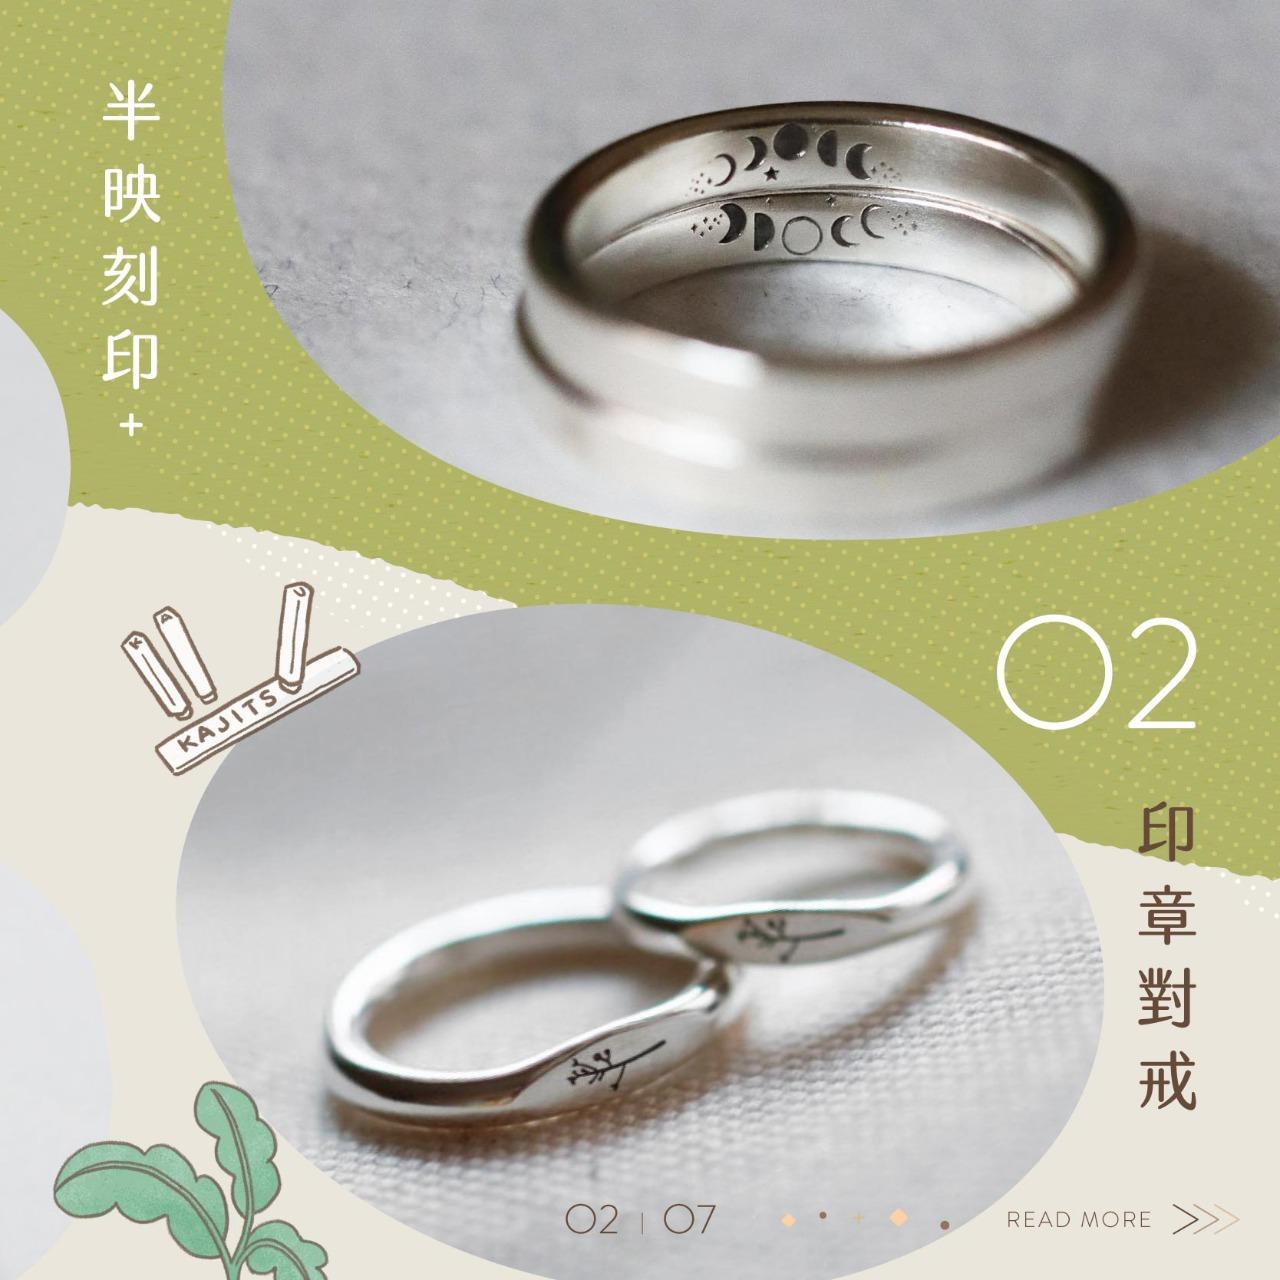 暖果 Kajitsu jewelry 戒指 金工 訂製 訂做 對戒 婚戒 課程 暖果